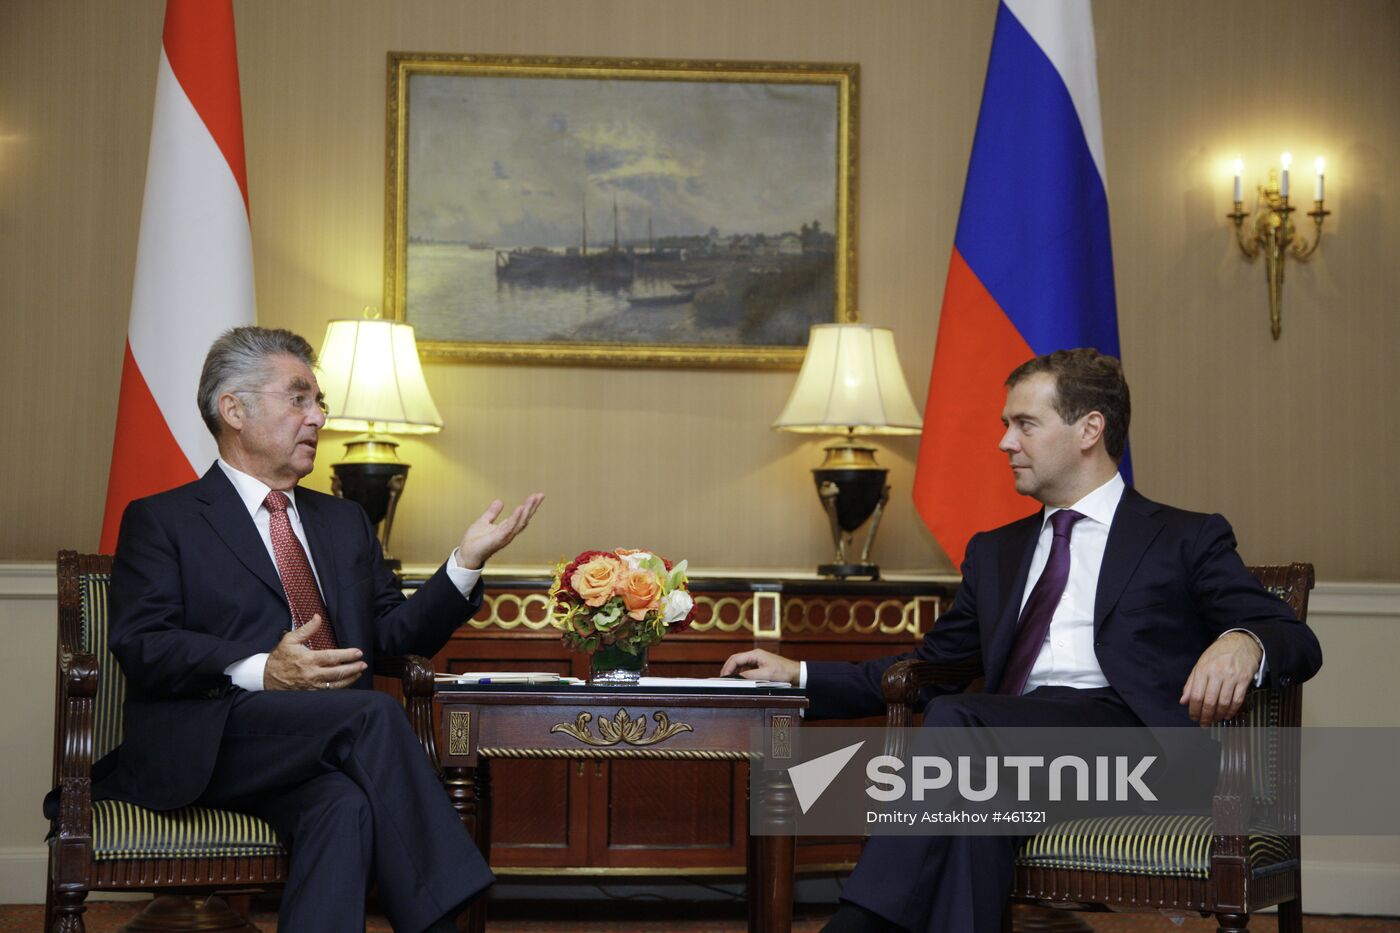 Dmitry Medvedev meets with Heinz Fischer